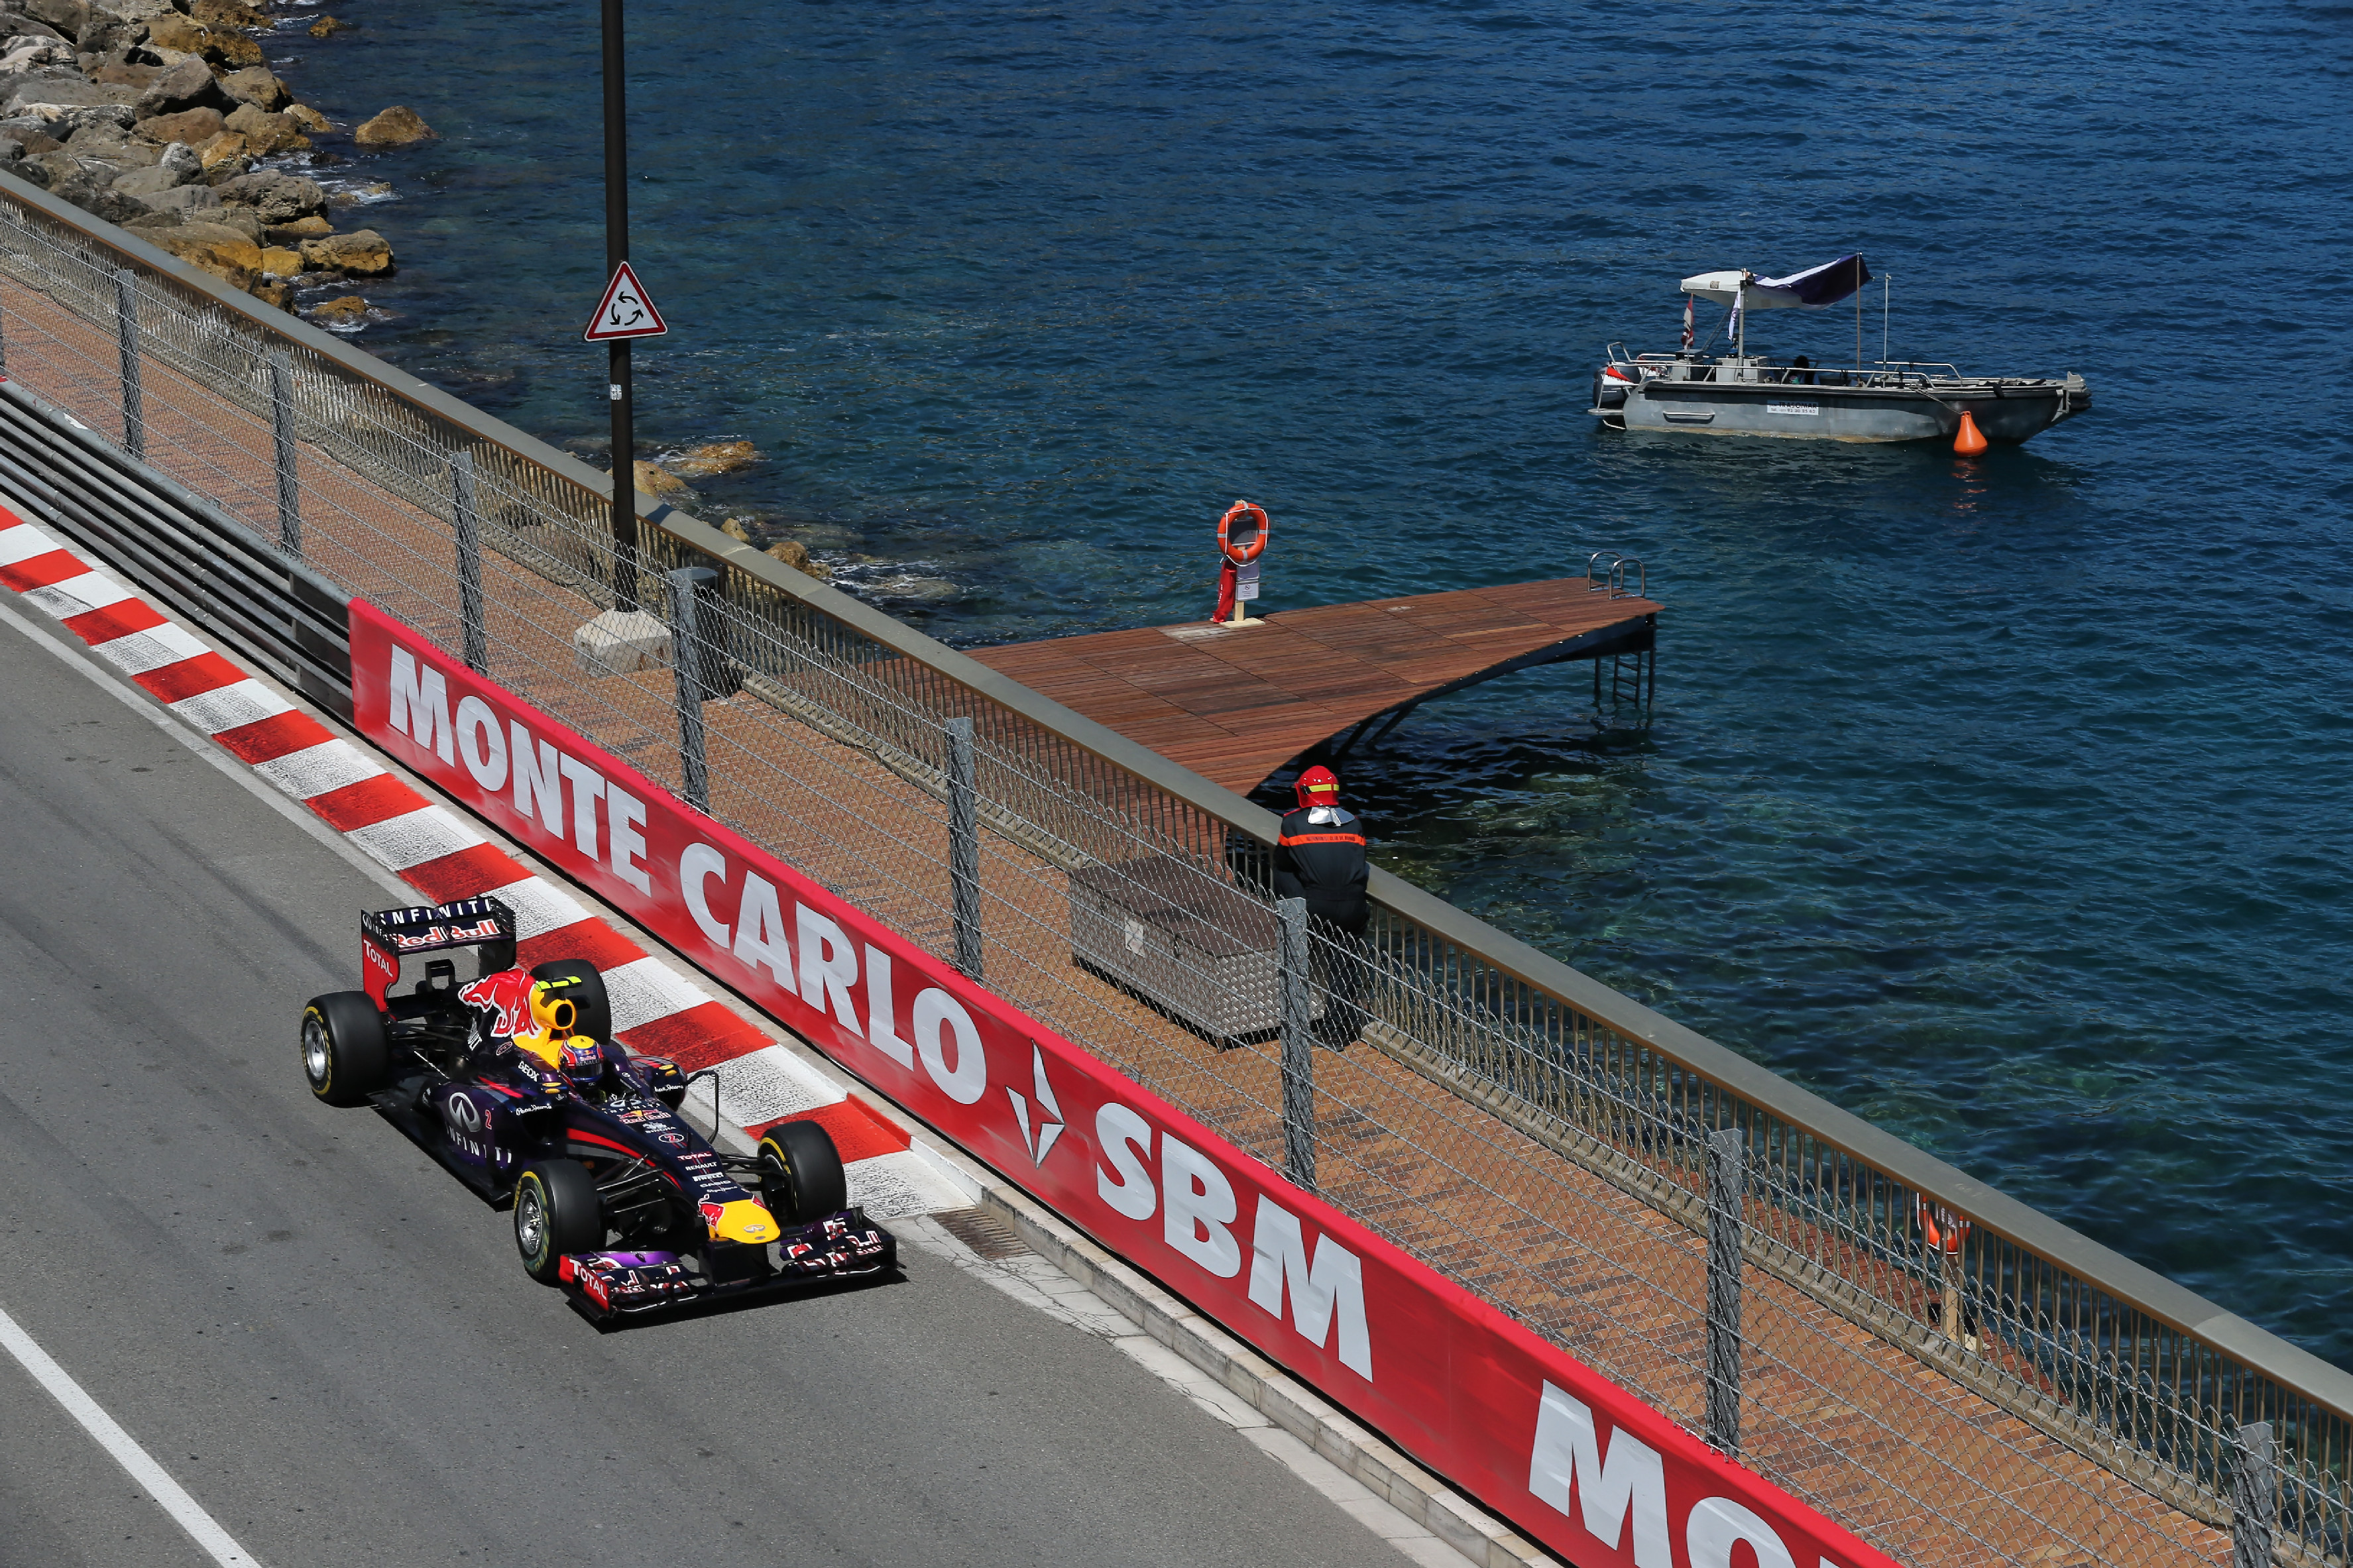 F1 2013 - Monaco Grand Prix | Federation Internationale de l'Automobile